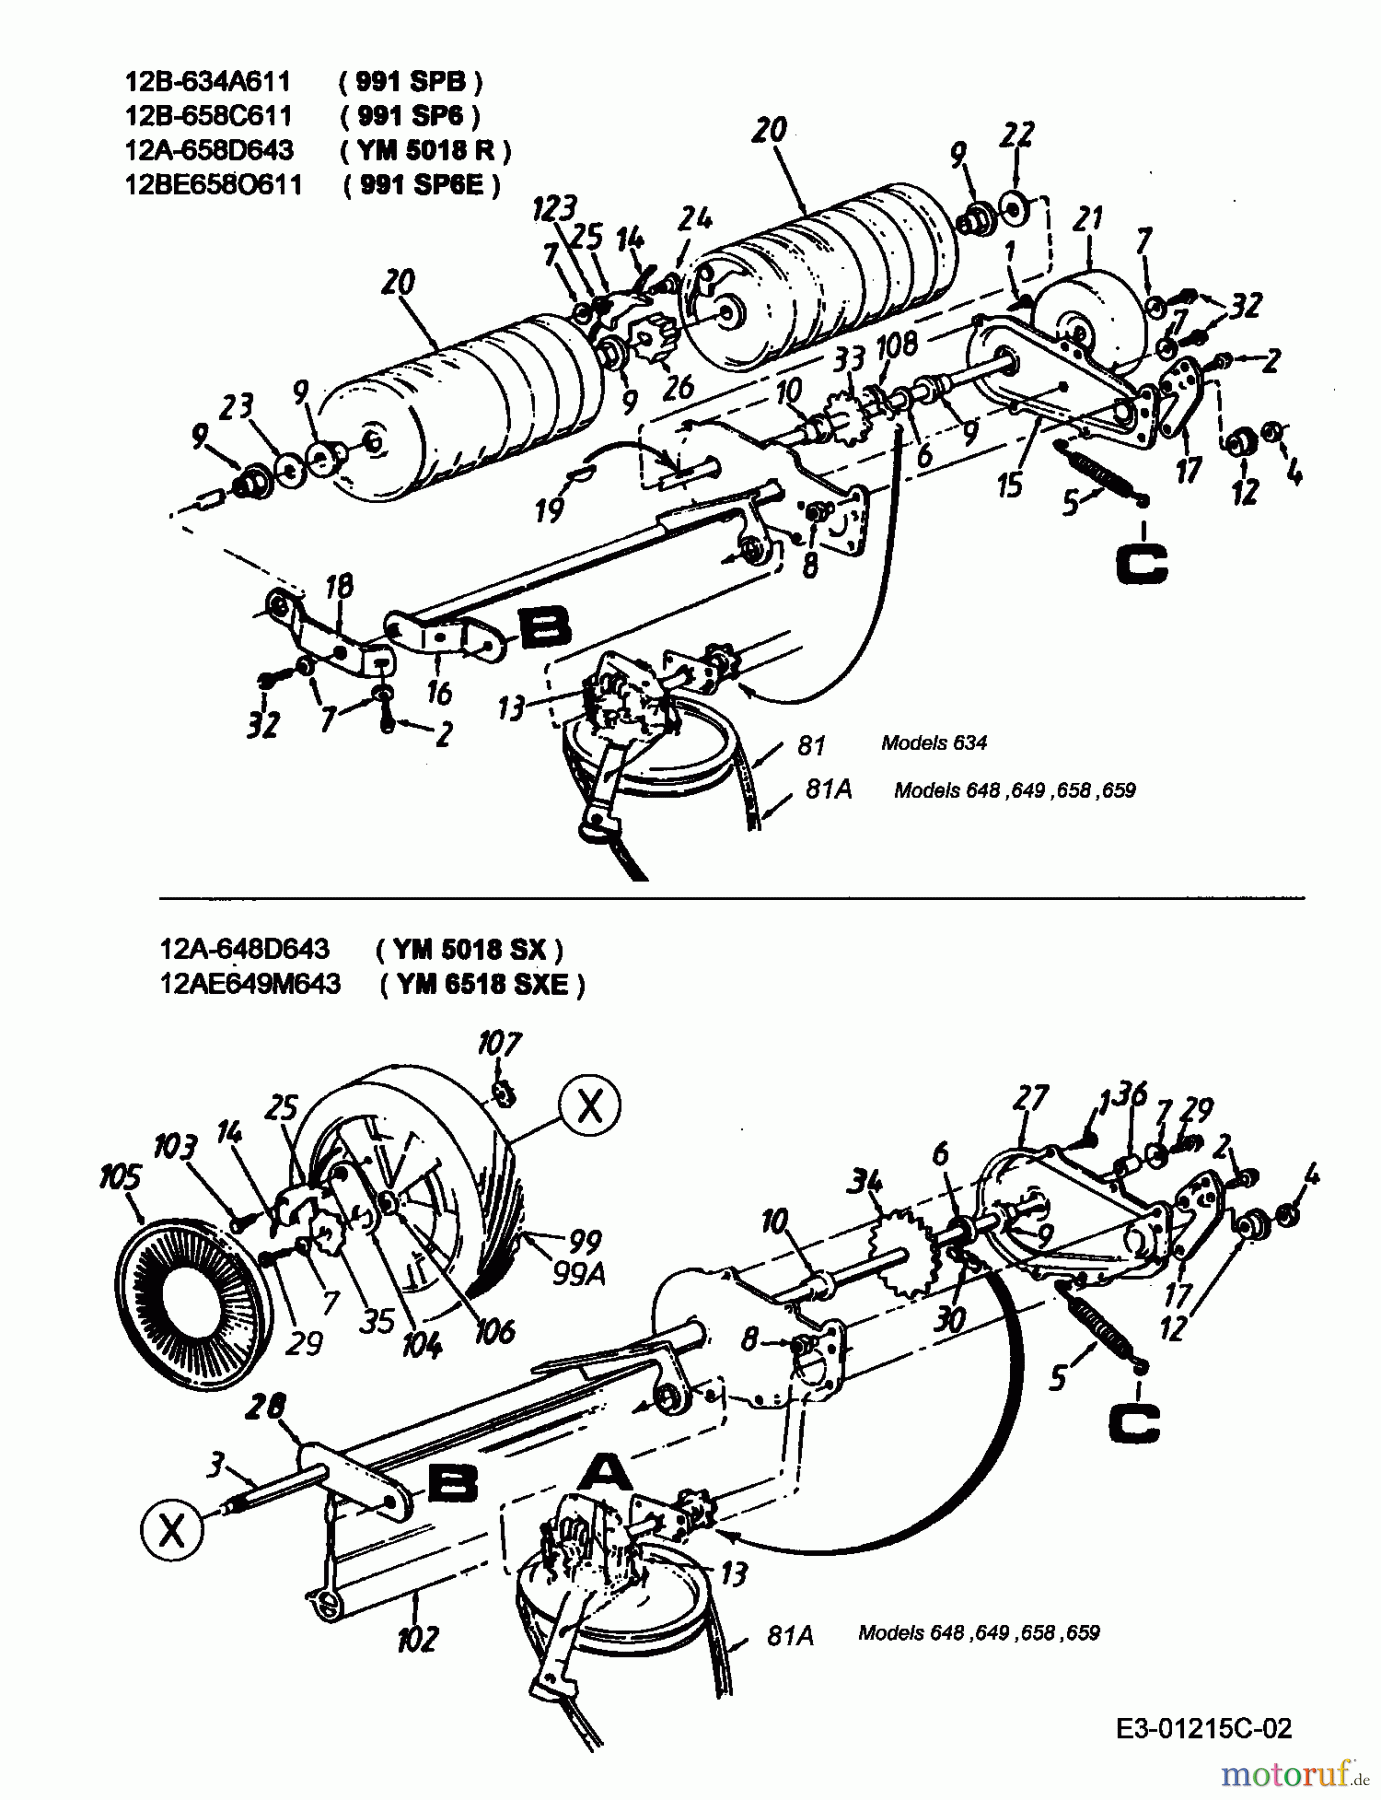  Yard-Man Motormäher mit Antrieb YM 5018 R 12A-658D643  (2000) Getriebe, Rollen, Räder